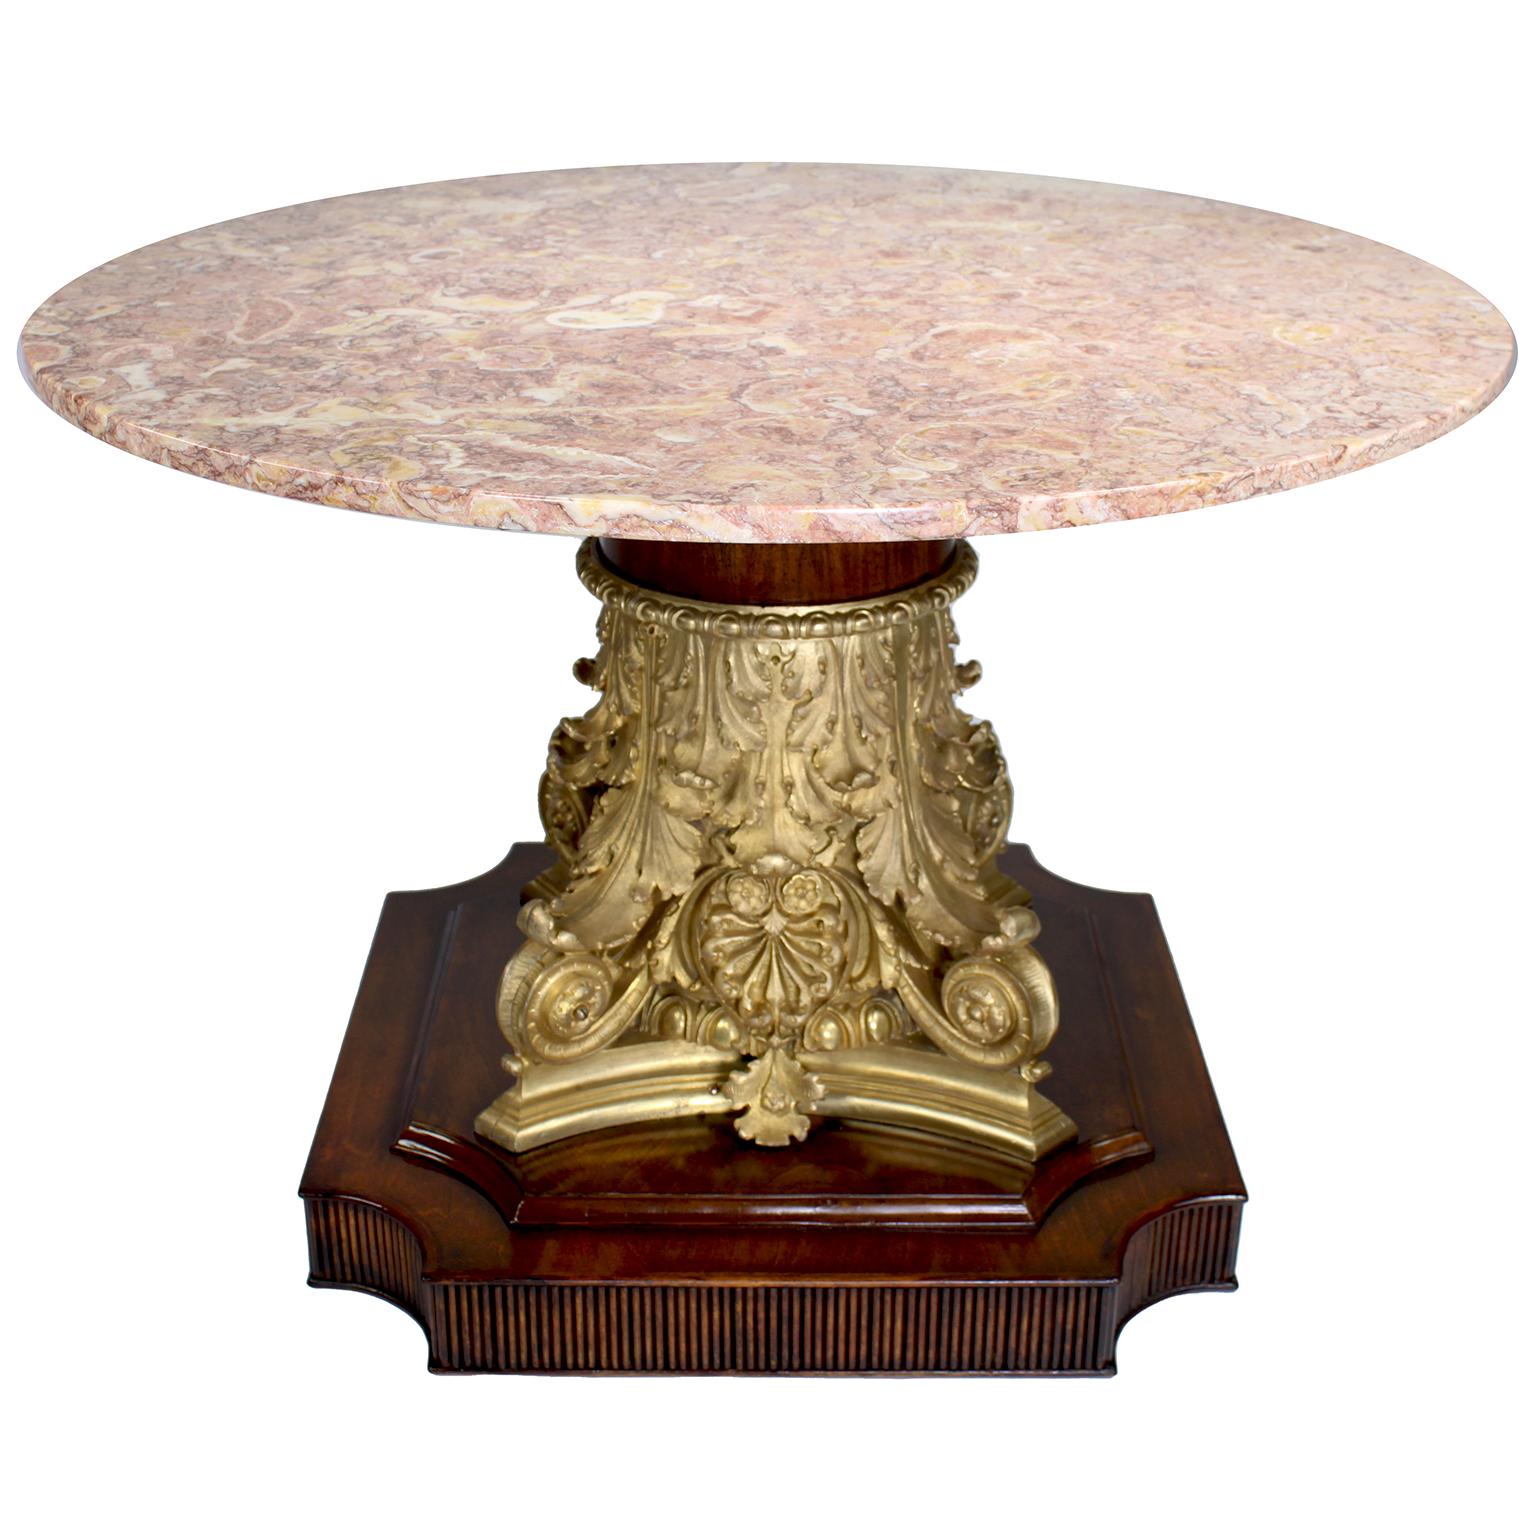 Une belle et rare table basse française du 19ème siècle de style néo-Renaissance en bronze doré et noyer avec dessus en marbre. Le chapiteau corinthien assemblé en bronze doré, maintenant converti en table basse, repose sur une base carrée finie et